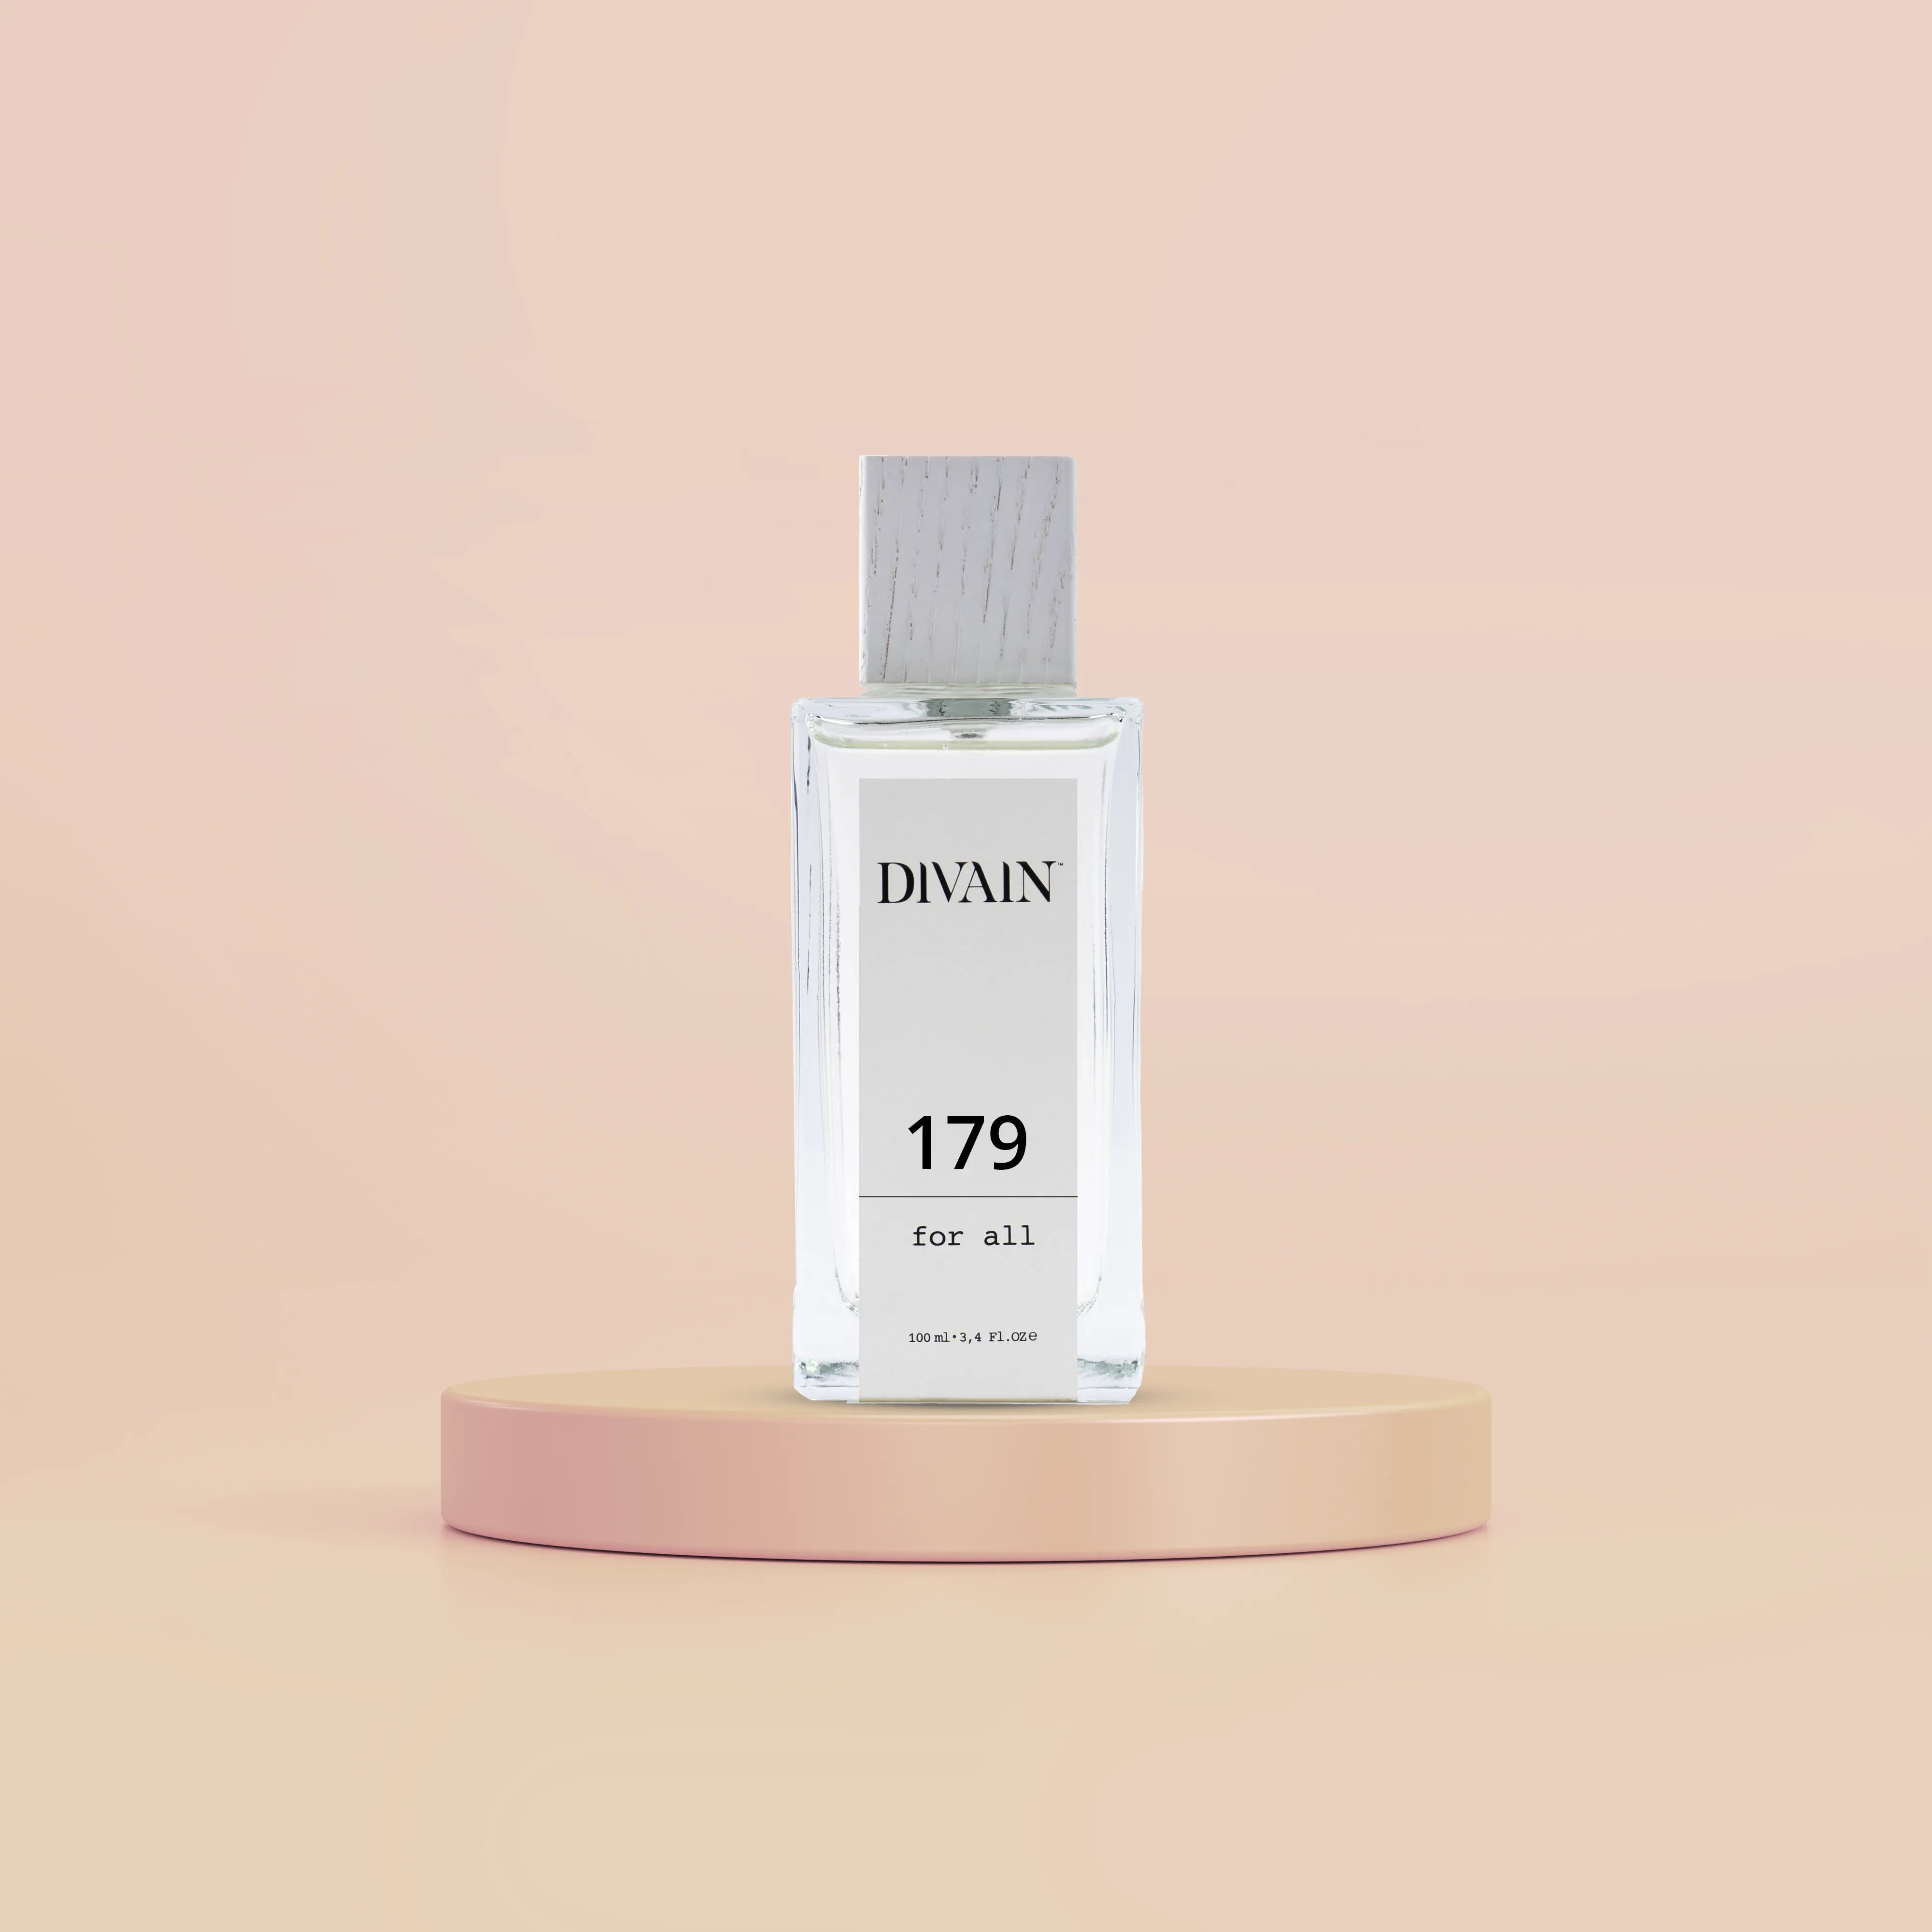 DIVAIN-179 | Similar a CK2 de Calvin Klein | Unisex